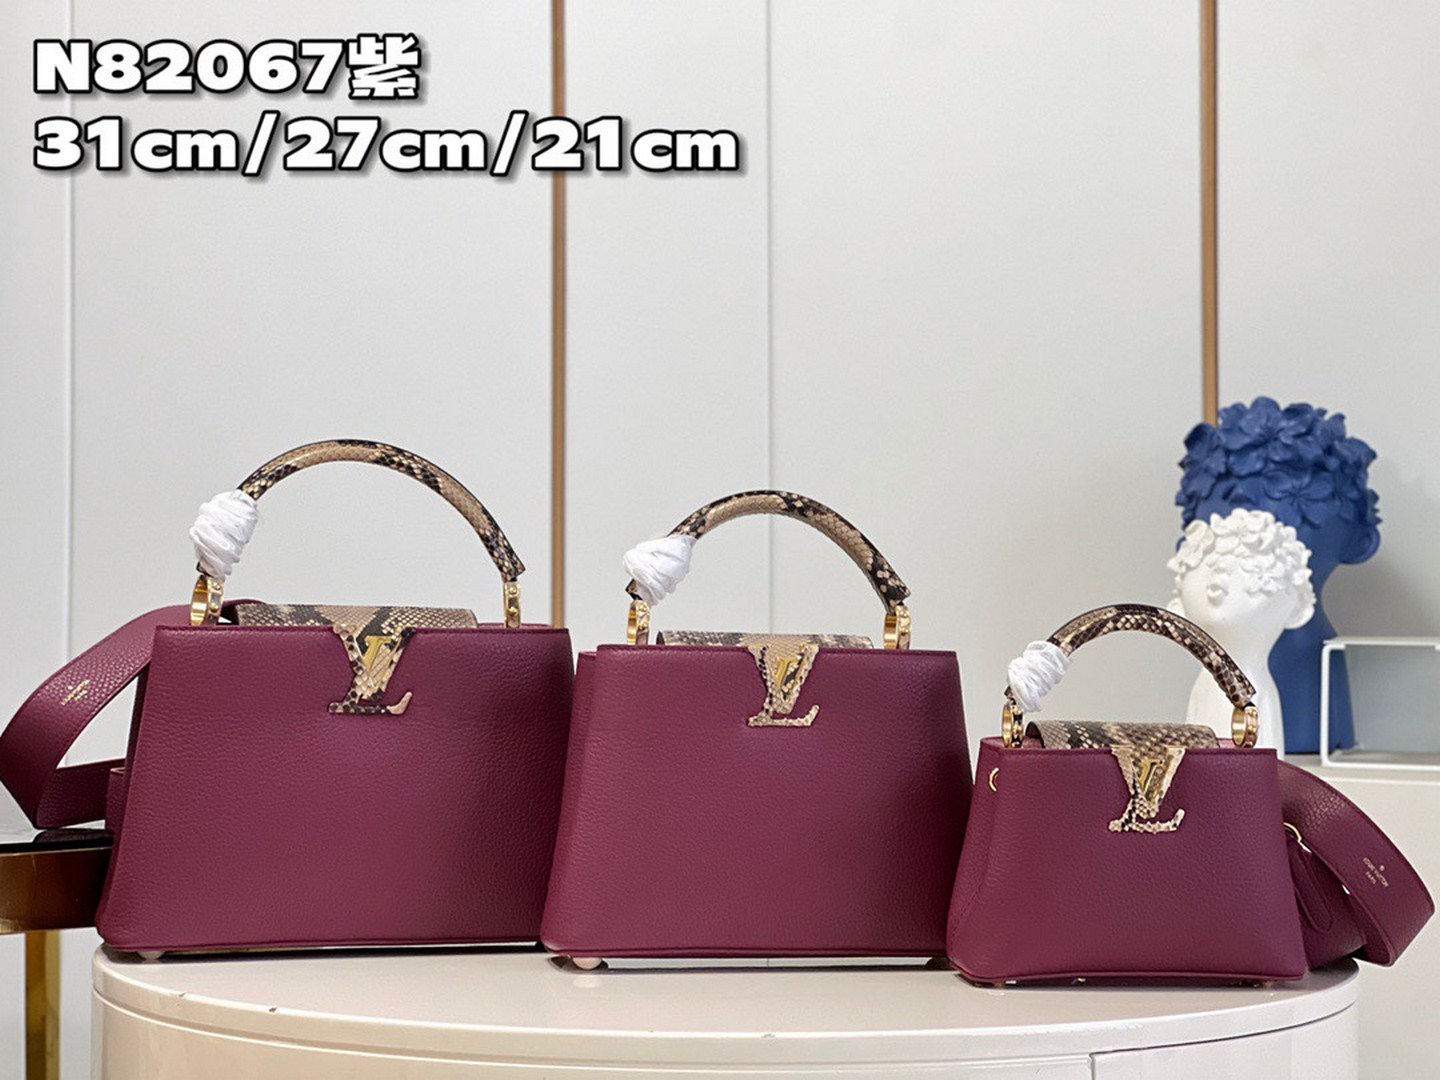 Capucines Mini Capucines - Handbags N82067